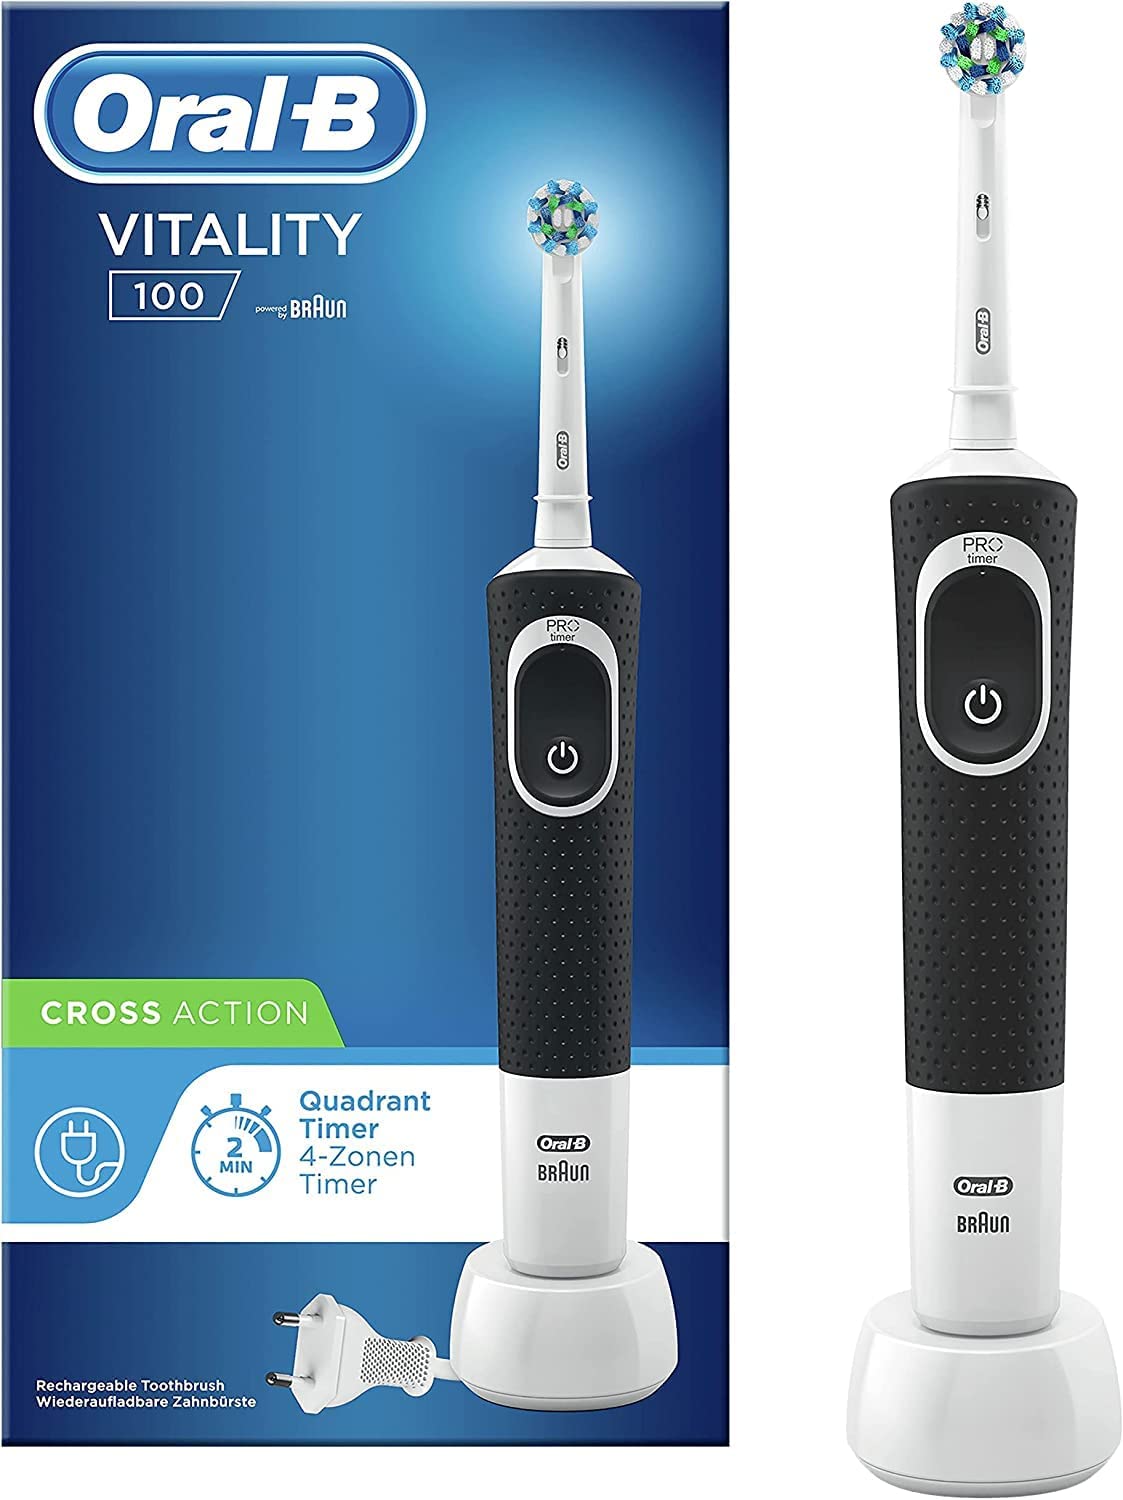 Oral-B Vitality 100 vs. Oral-B Vitality Pro